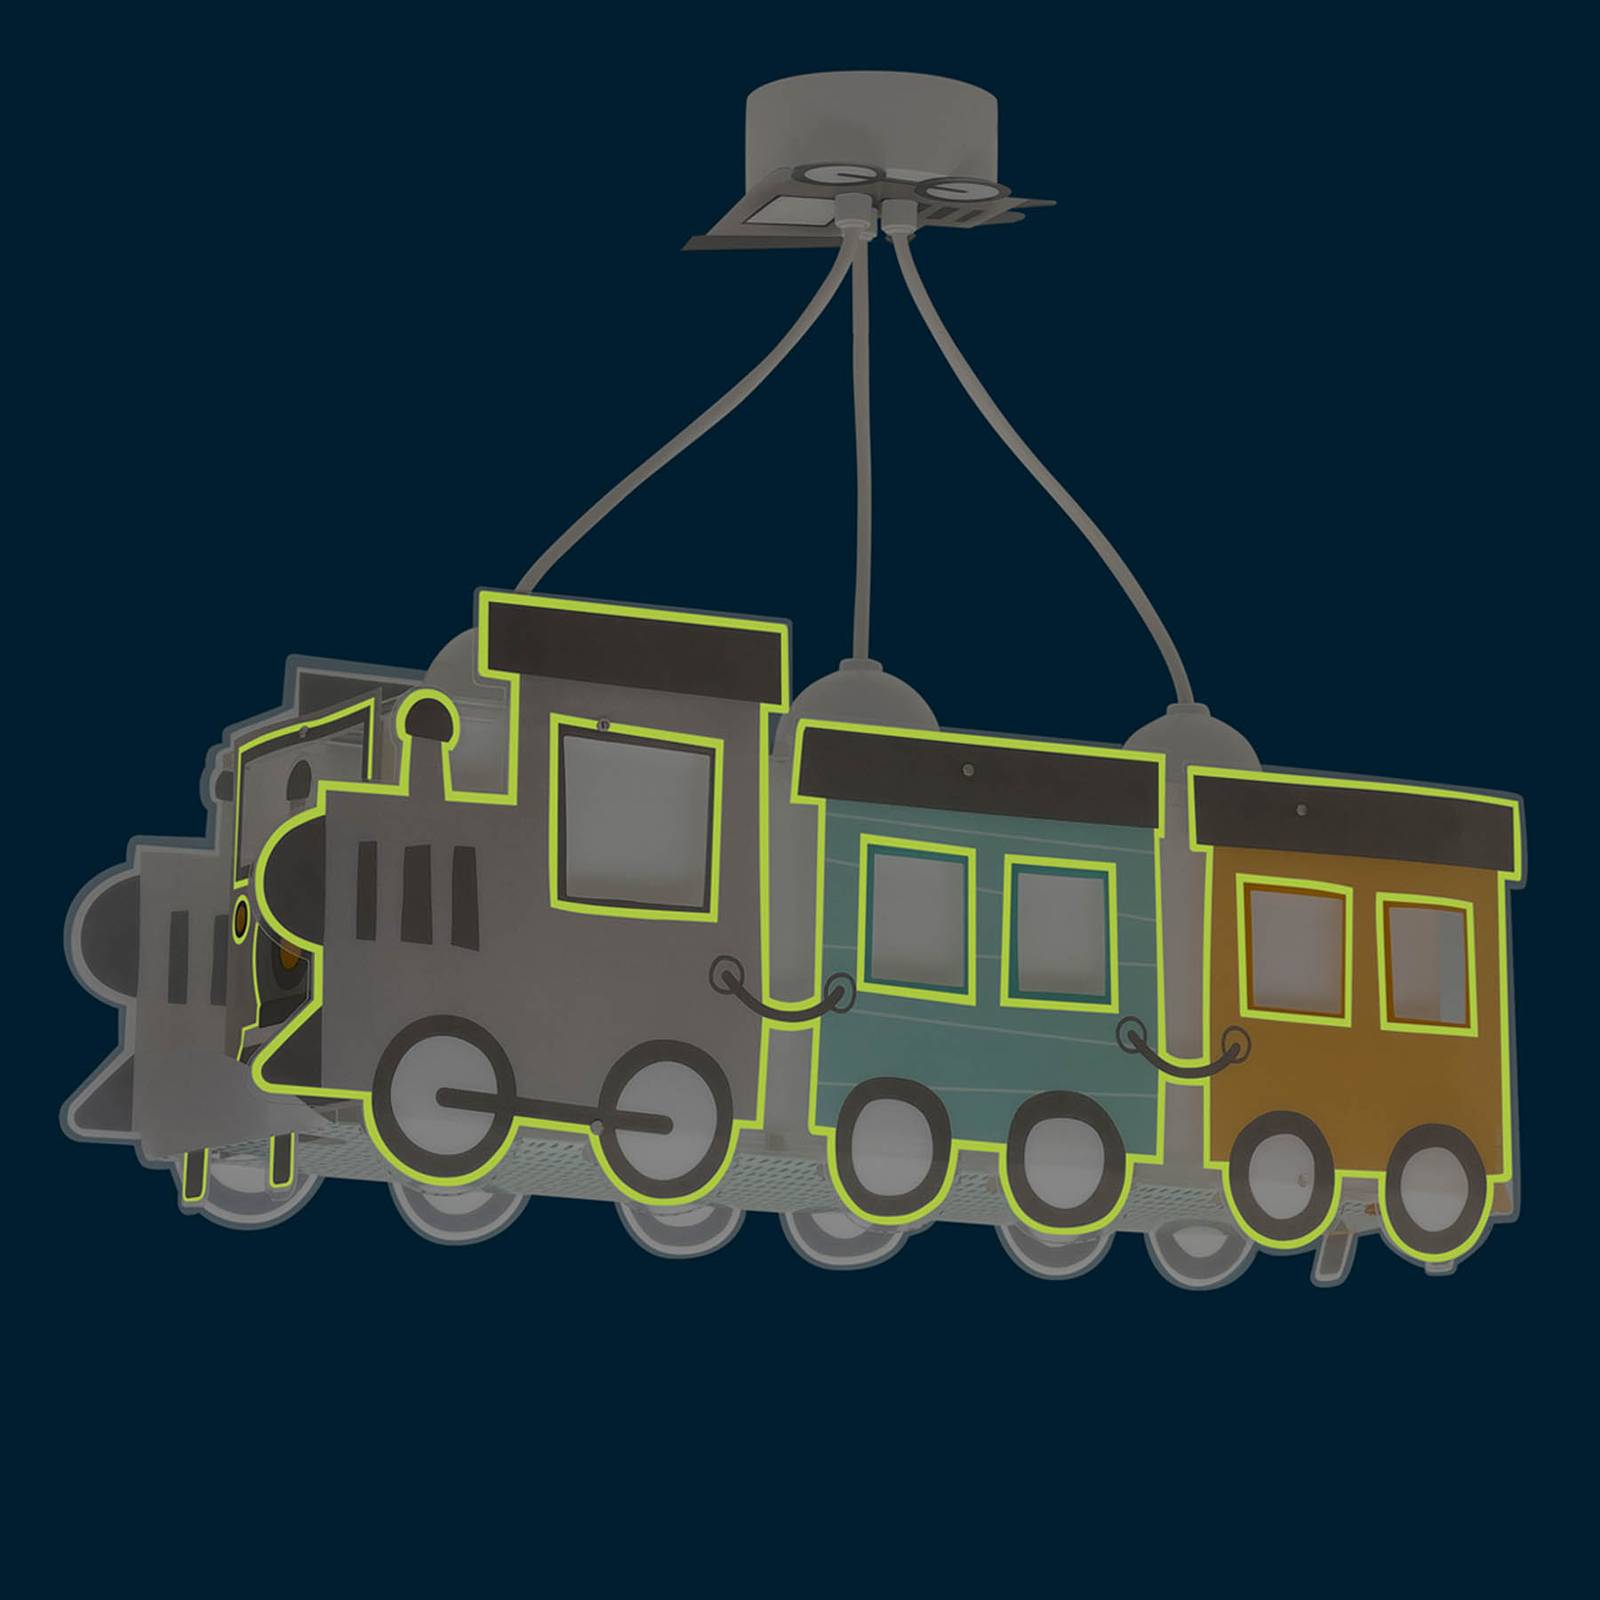 Dalber Night Train Hängelampe als Lokomotive von Dalber